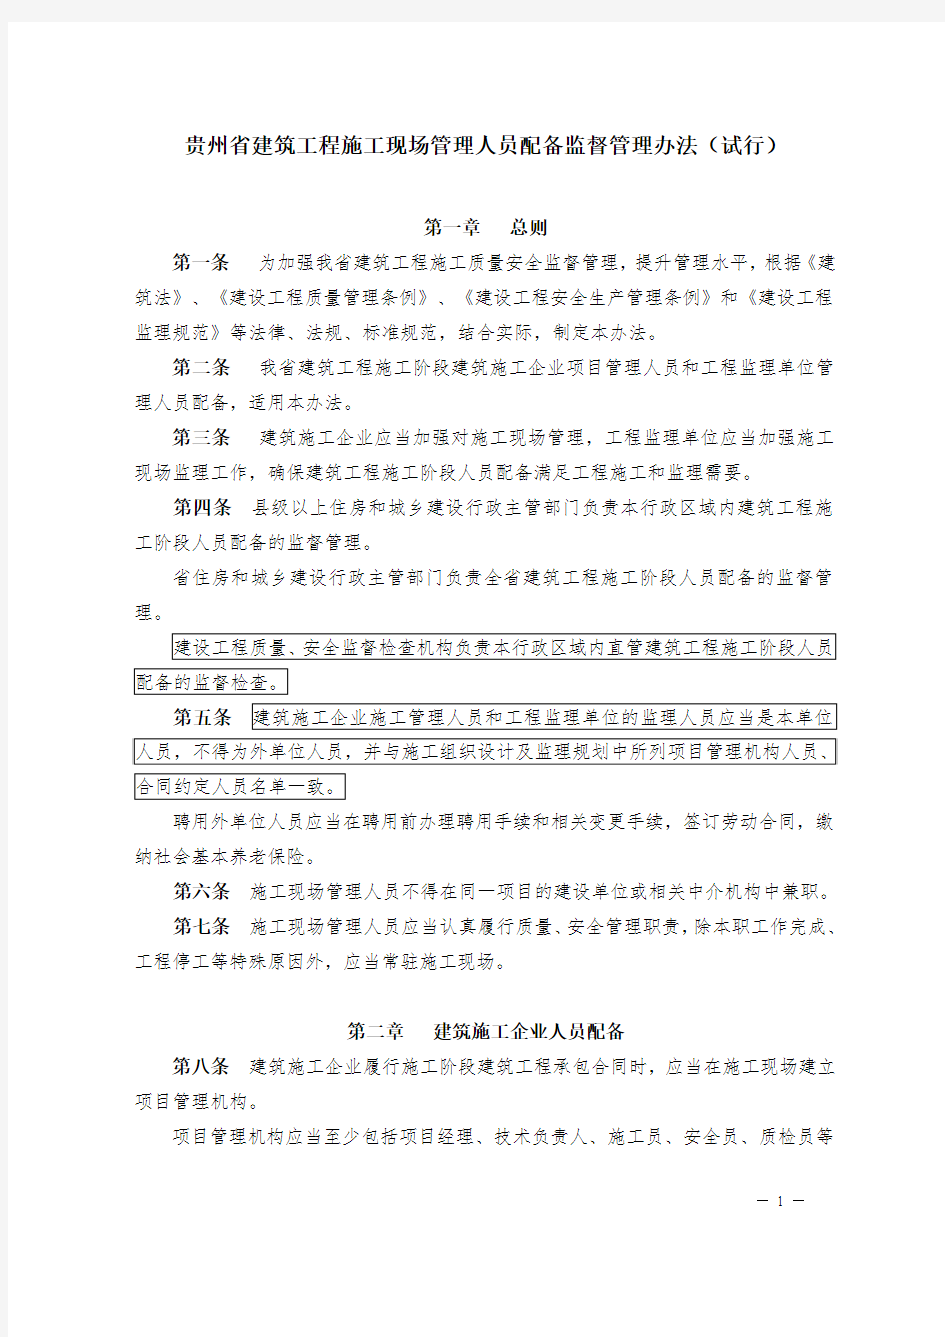 贵州省建筑工程施工现场管理人员配备监督管理办法(试行)